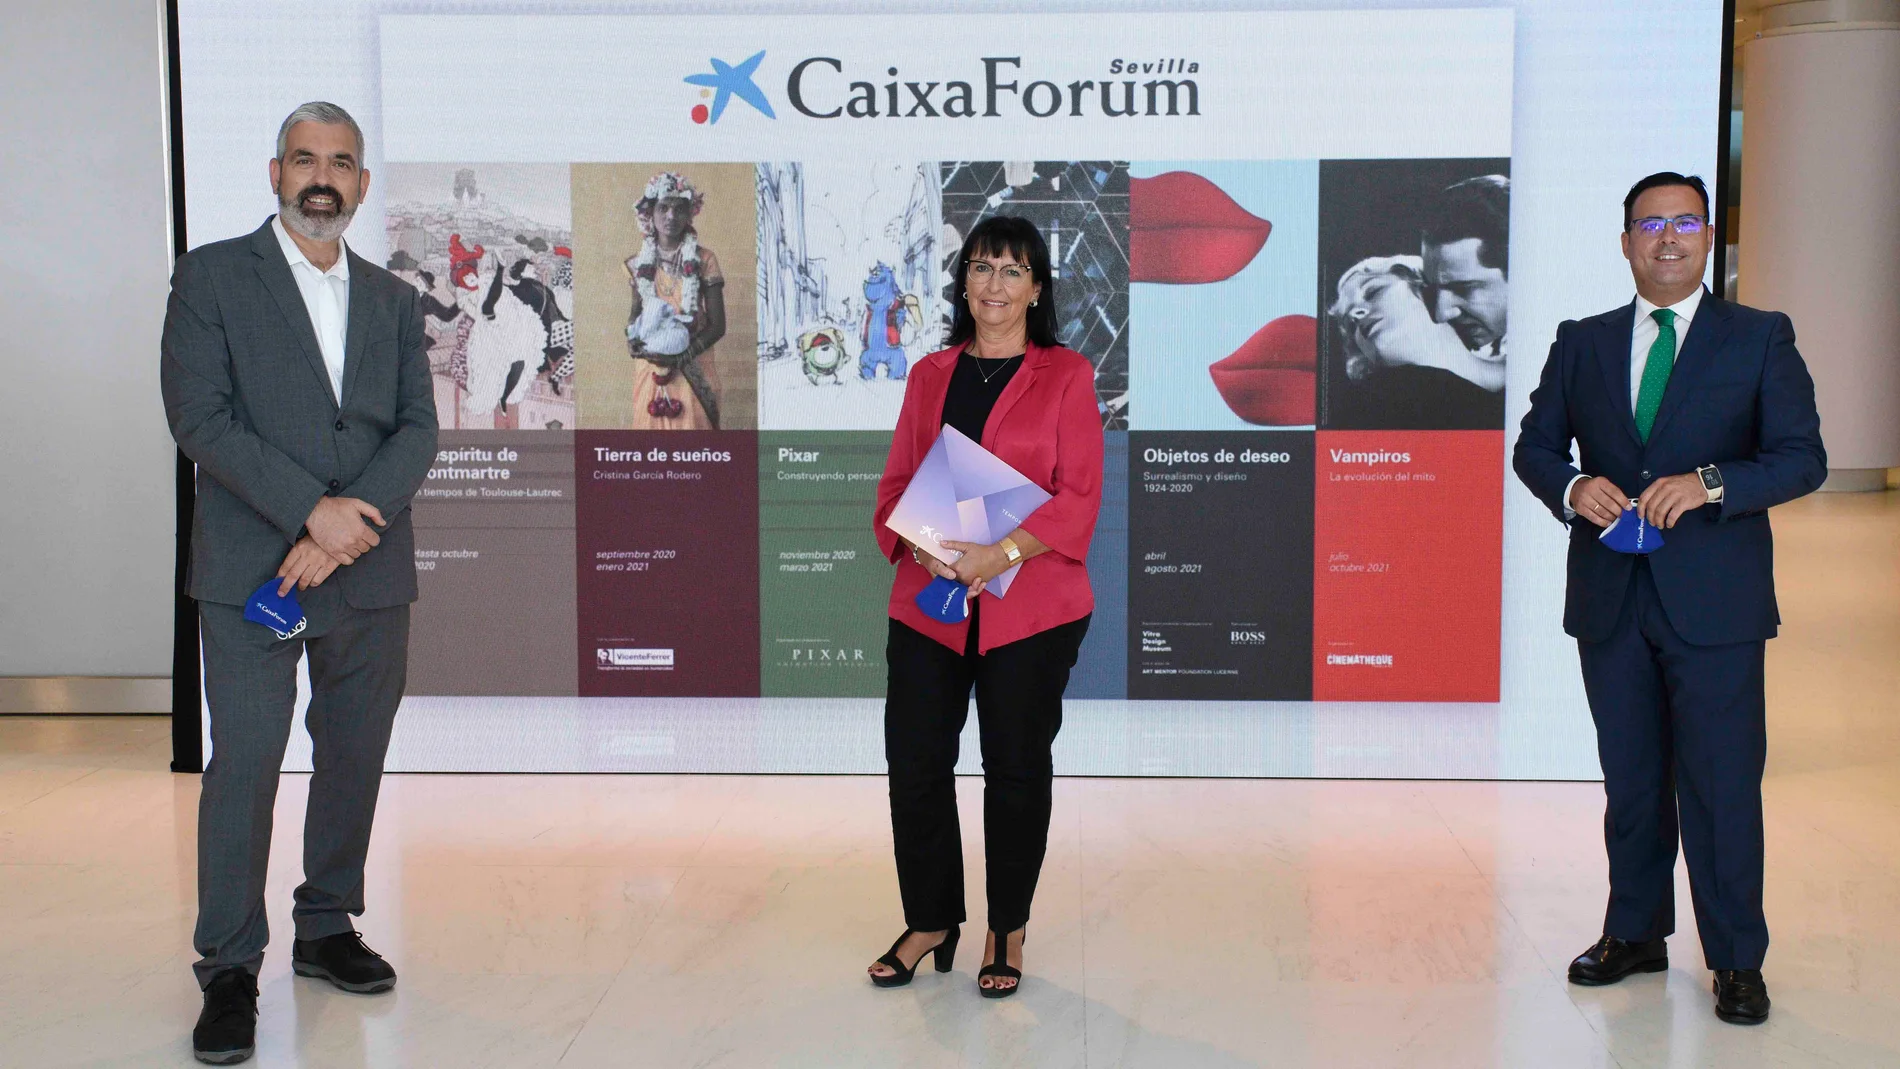 Presentación de la temporada 2020/2021 en CaixaForum Sevilla